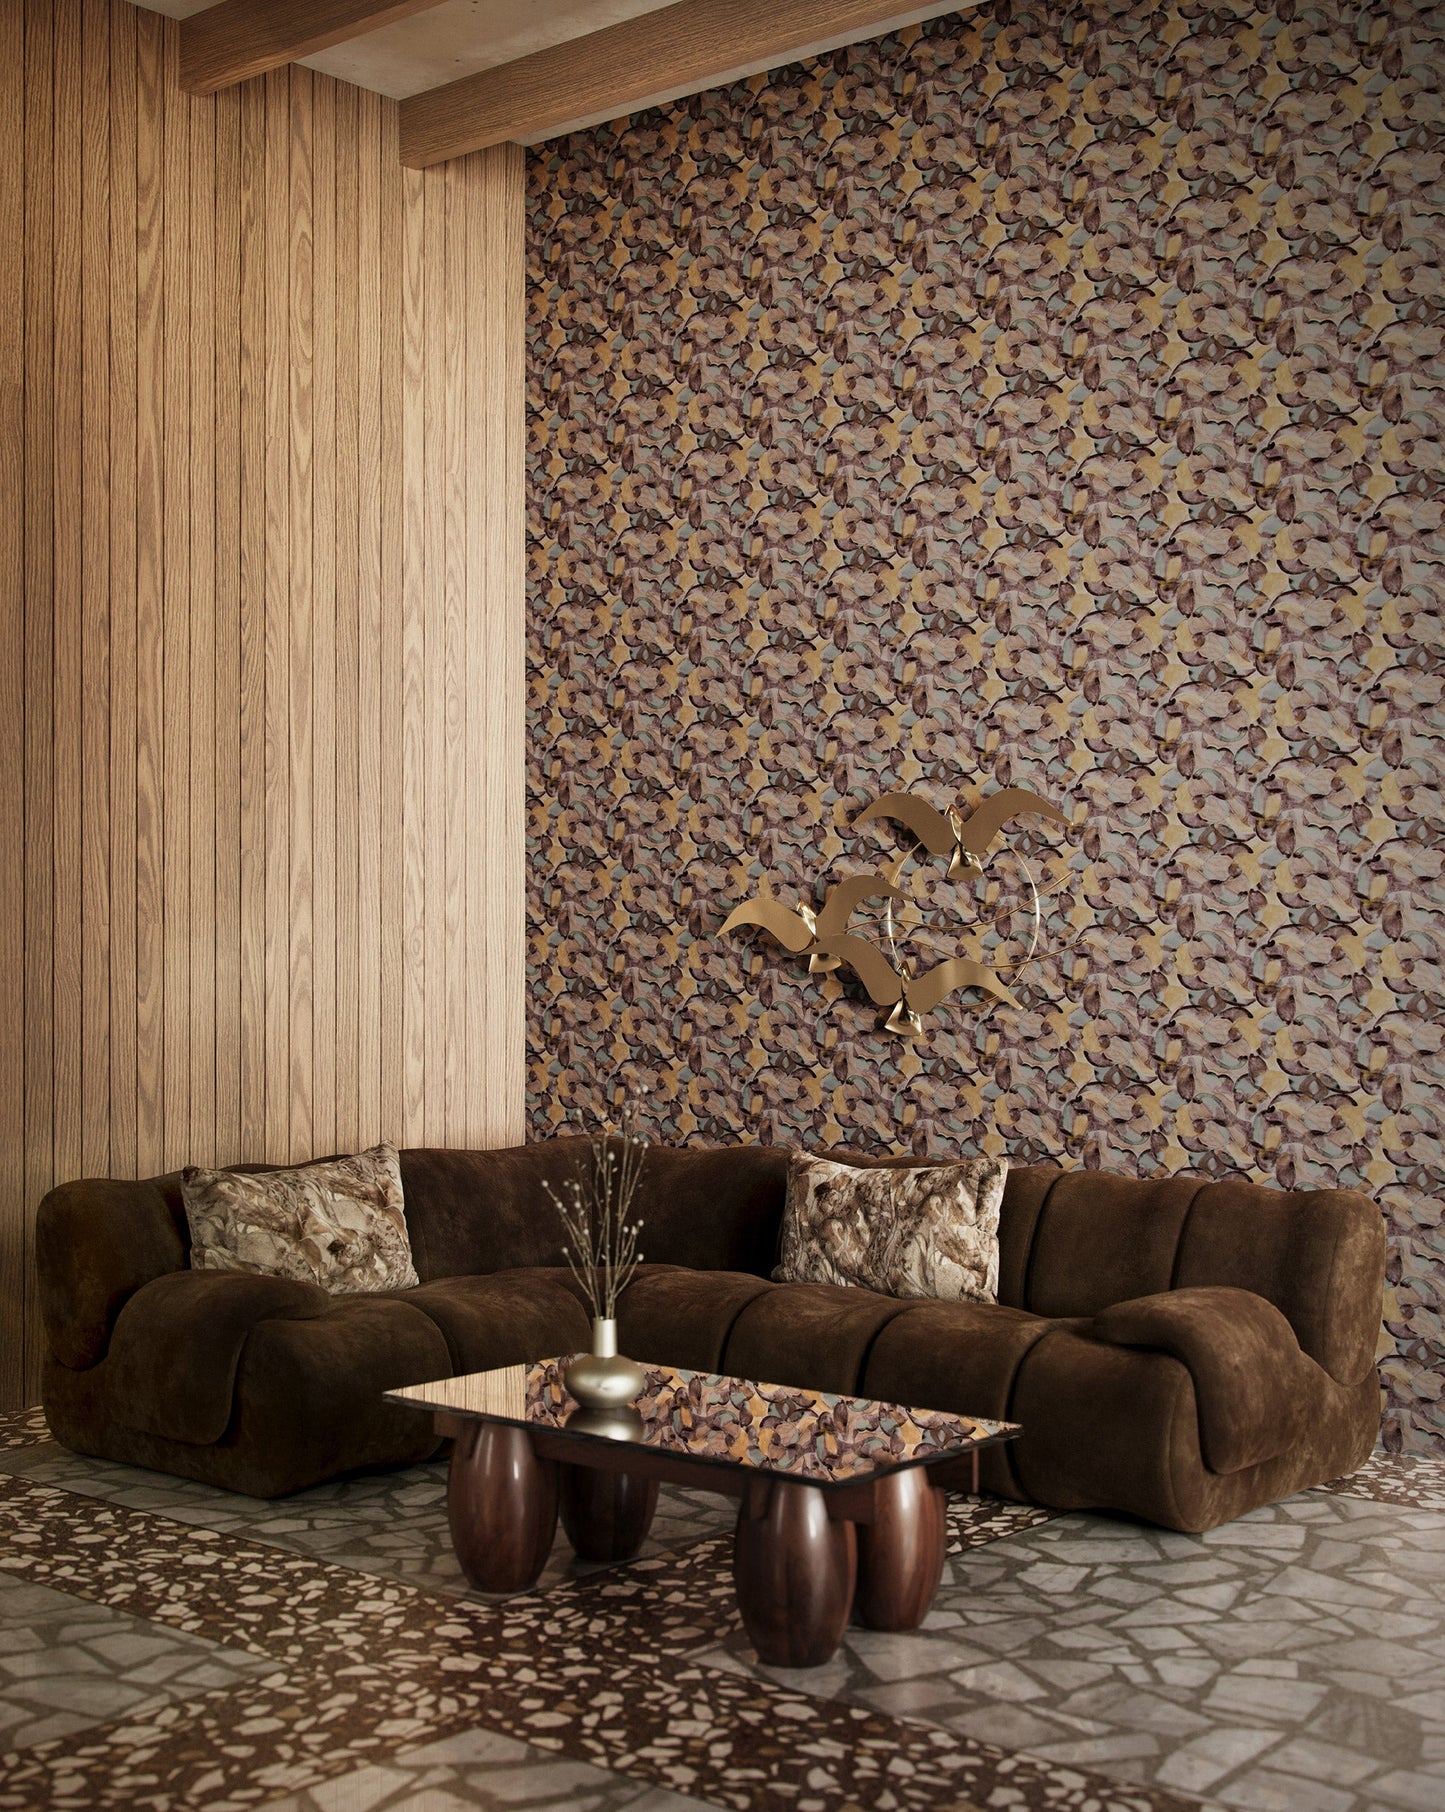 Eskayel's Orbs wallpaper in a dark multi hued colorway is displayed in a living room.